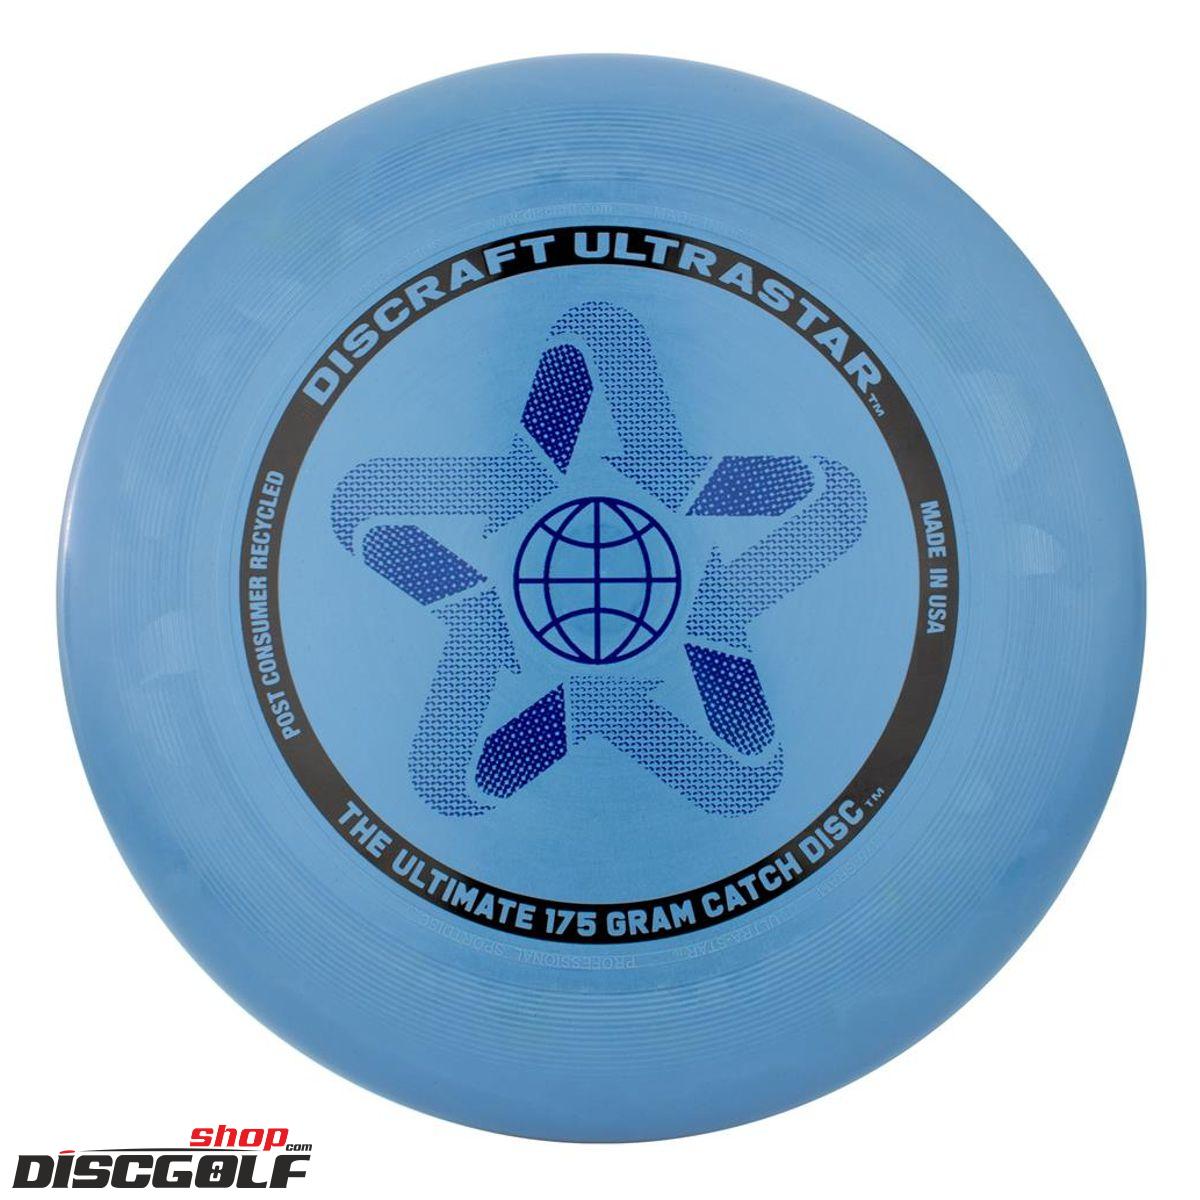 Discraft UltraStar Recycled Modrá/Blue (discgolf)